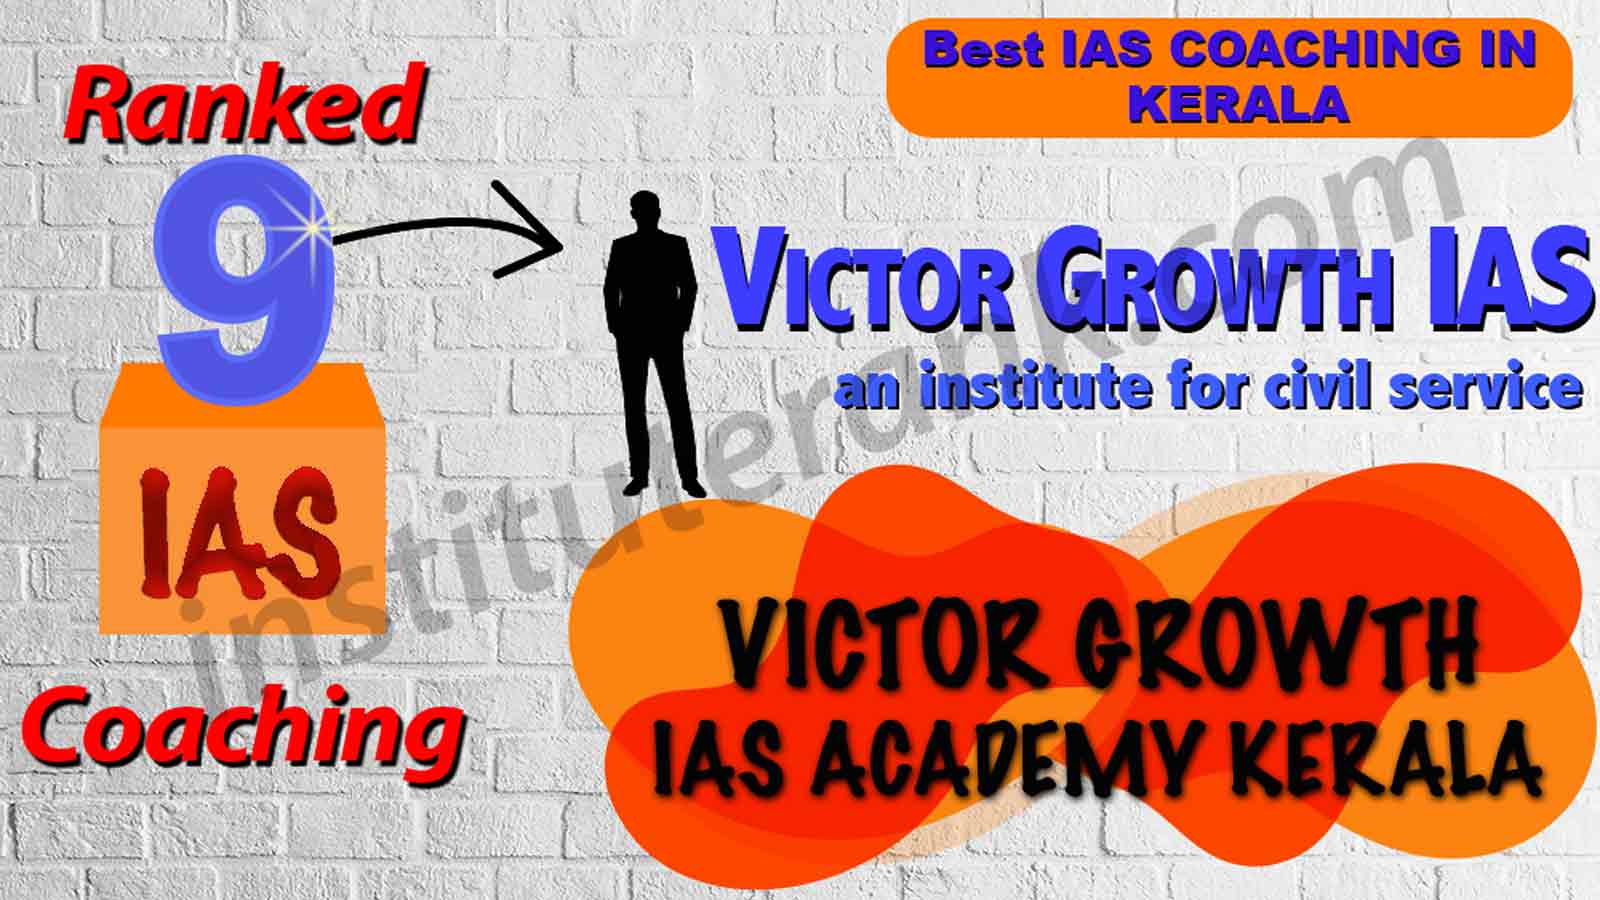 Best IAS Coaching of Kerala